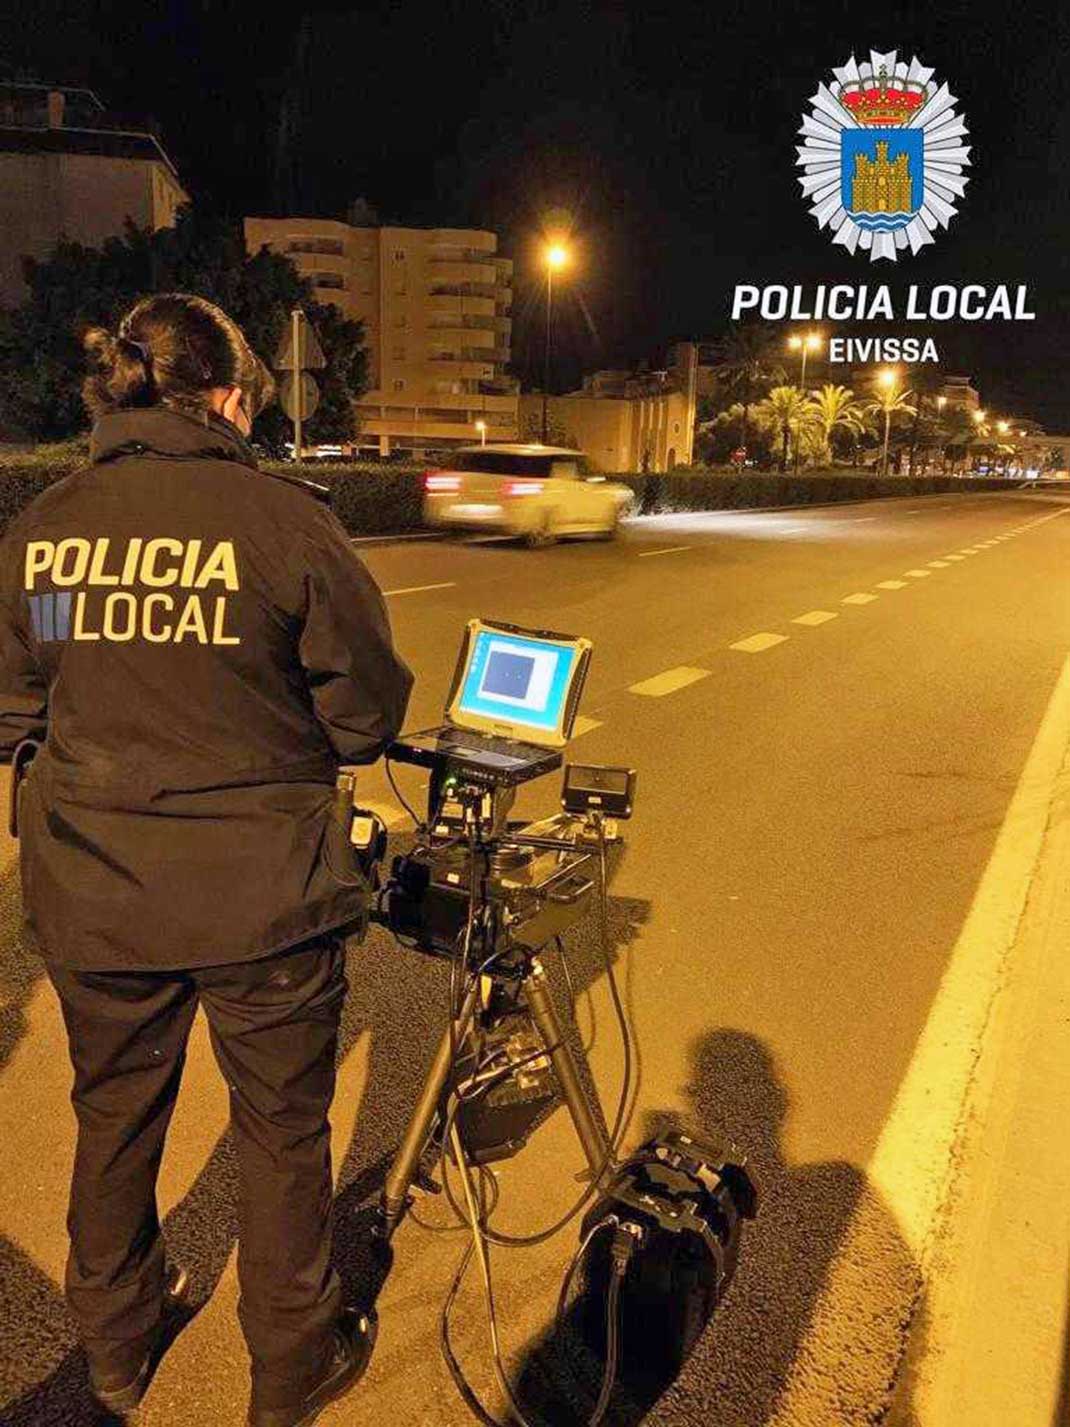 Die Polizei der Inselhauptstadt von Ibiza kontrolliert verstärkt